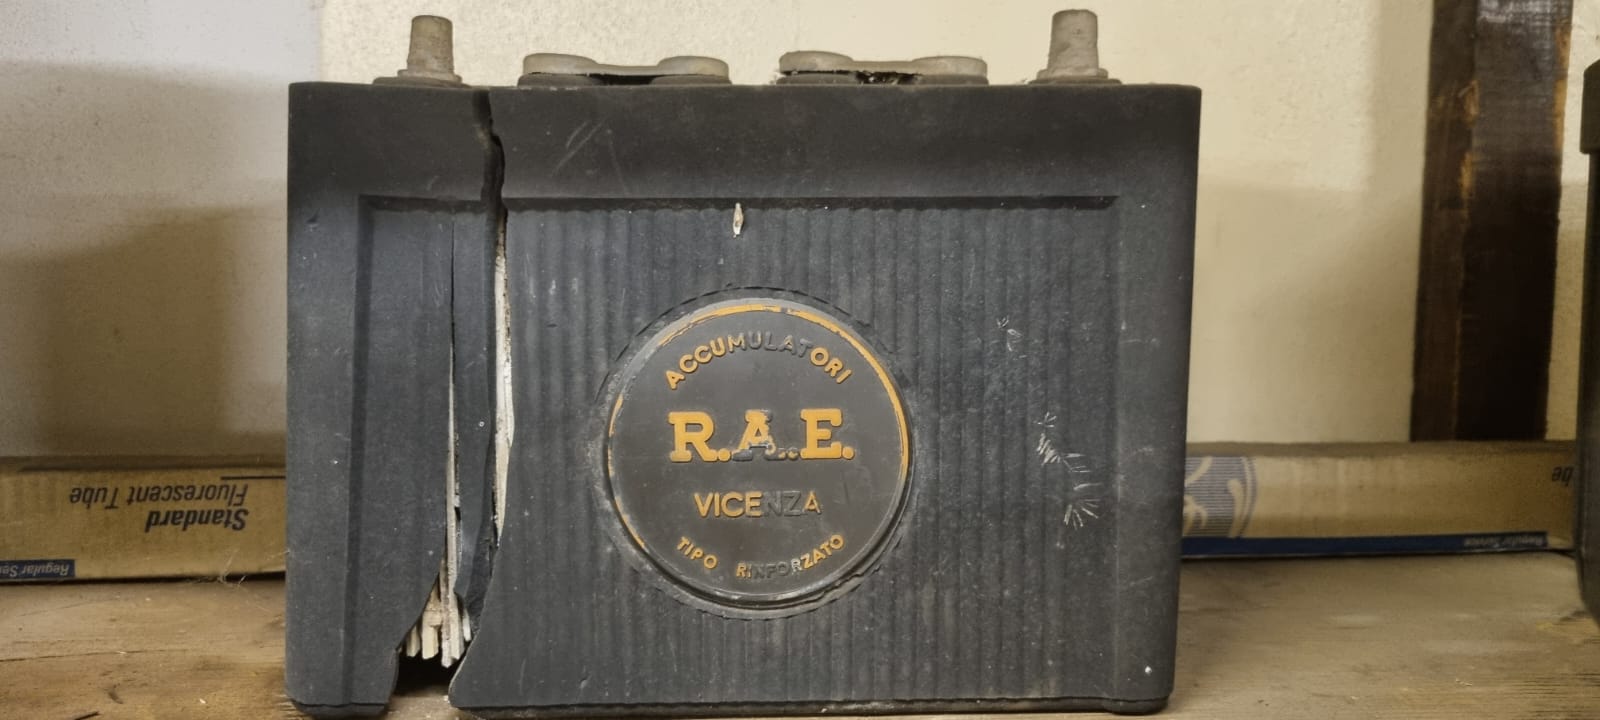 Prima batteria RAE prodotta nel 1950